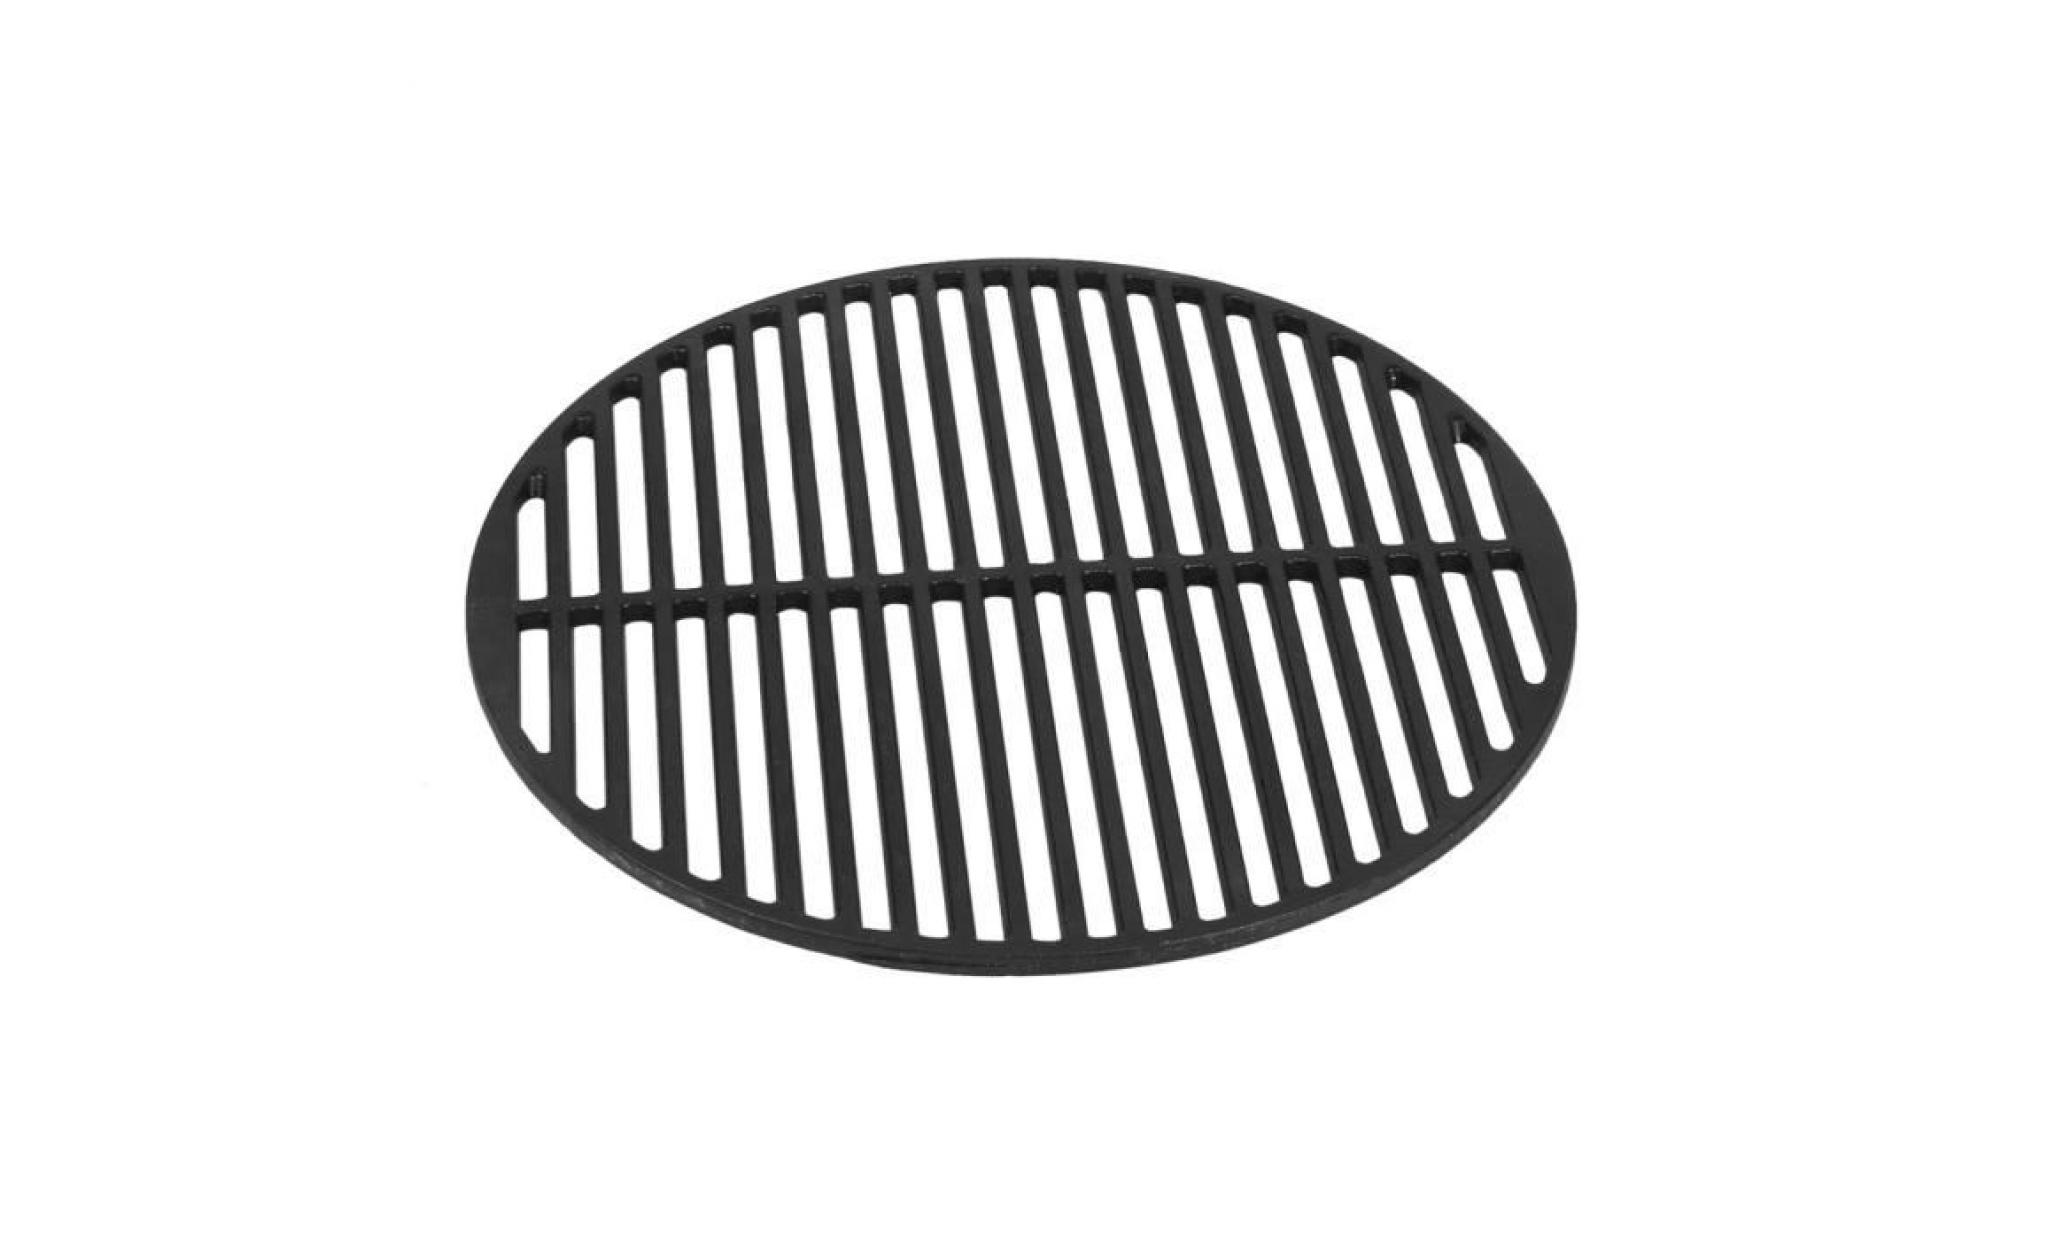 grille en fonte barbecue diamètre 45cm ronde antiadhésive rôtissoire cuisson accessoires noir pas cher